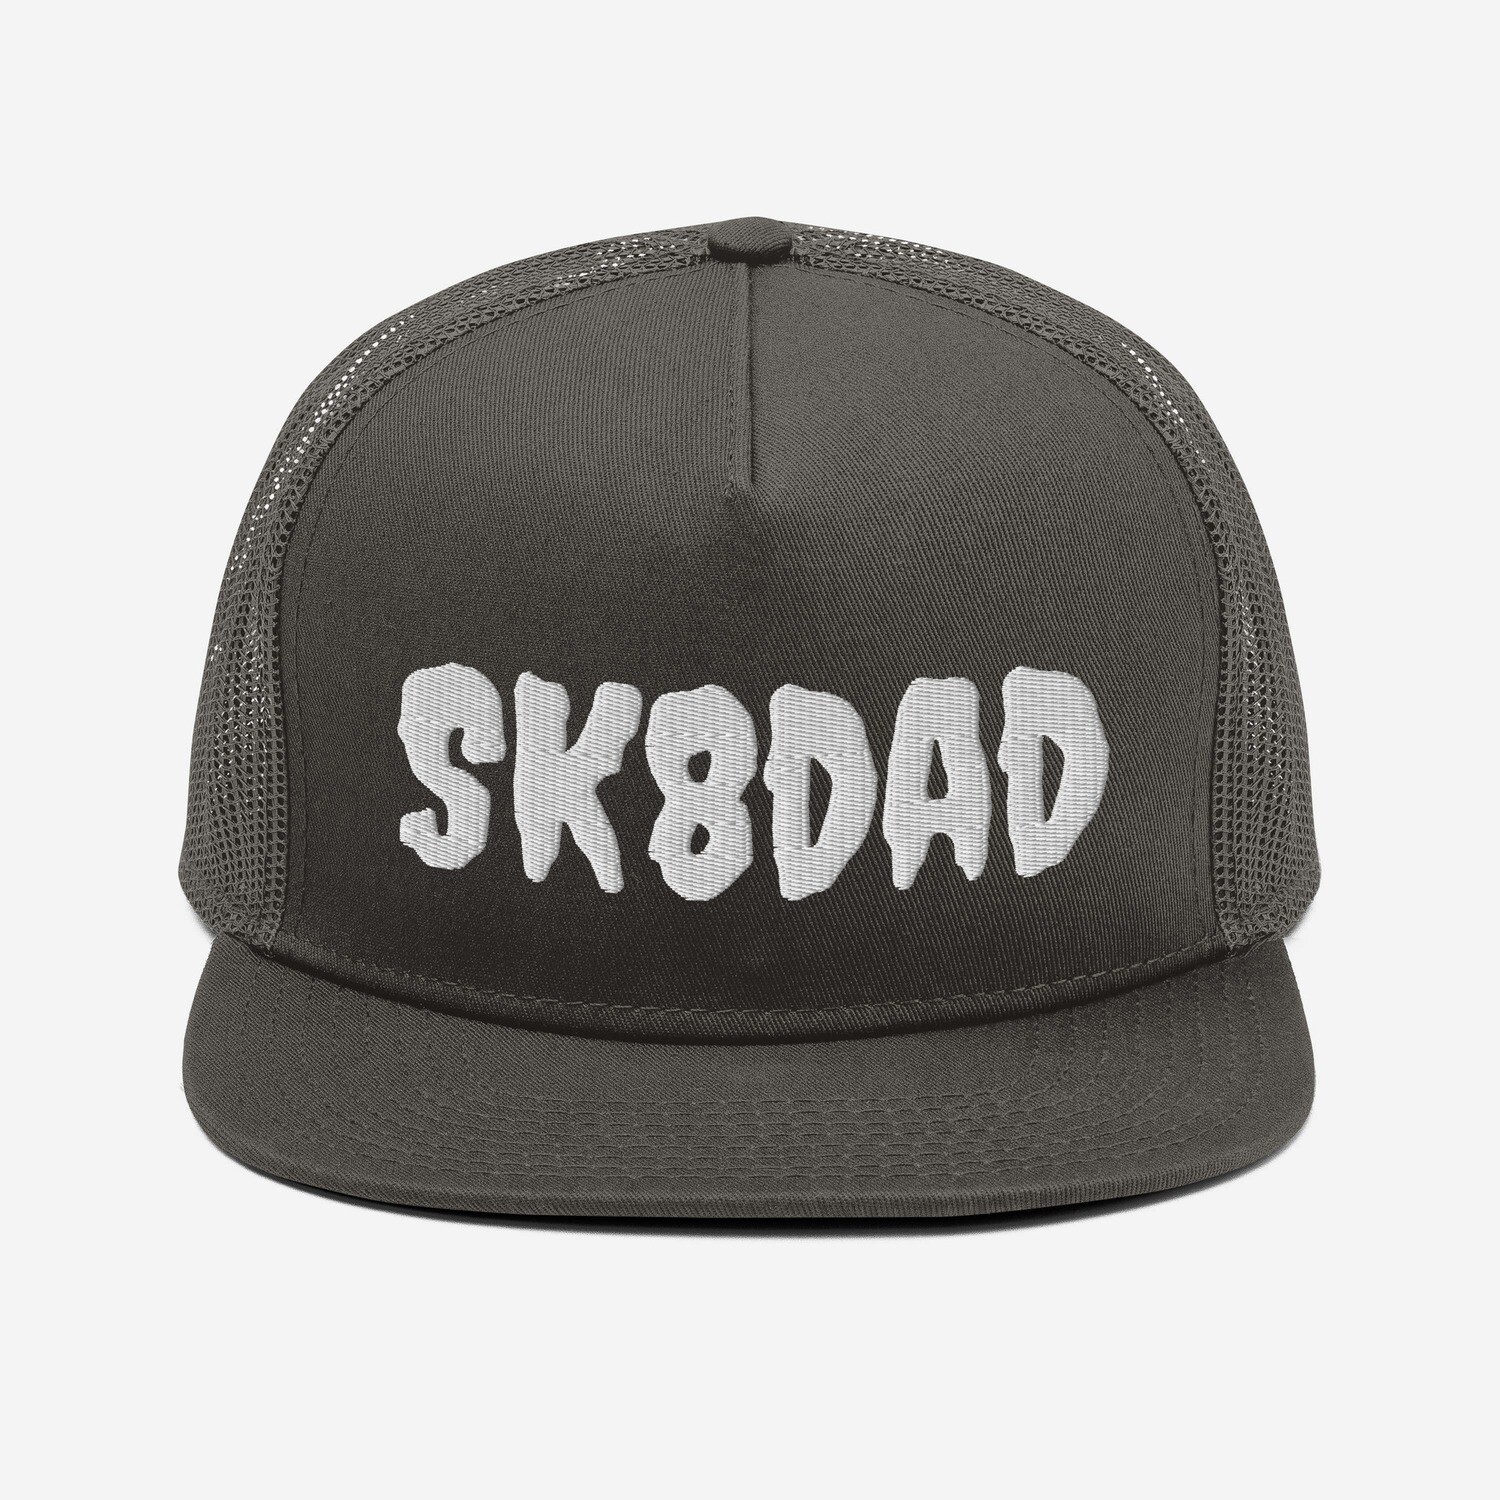 SK8DAD - Mesh Back Snapback